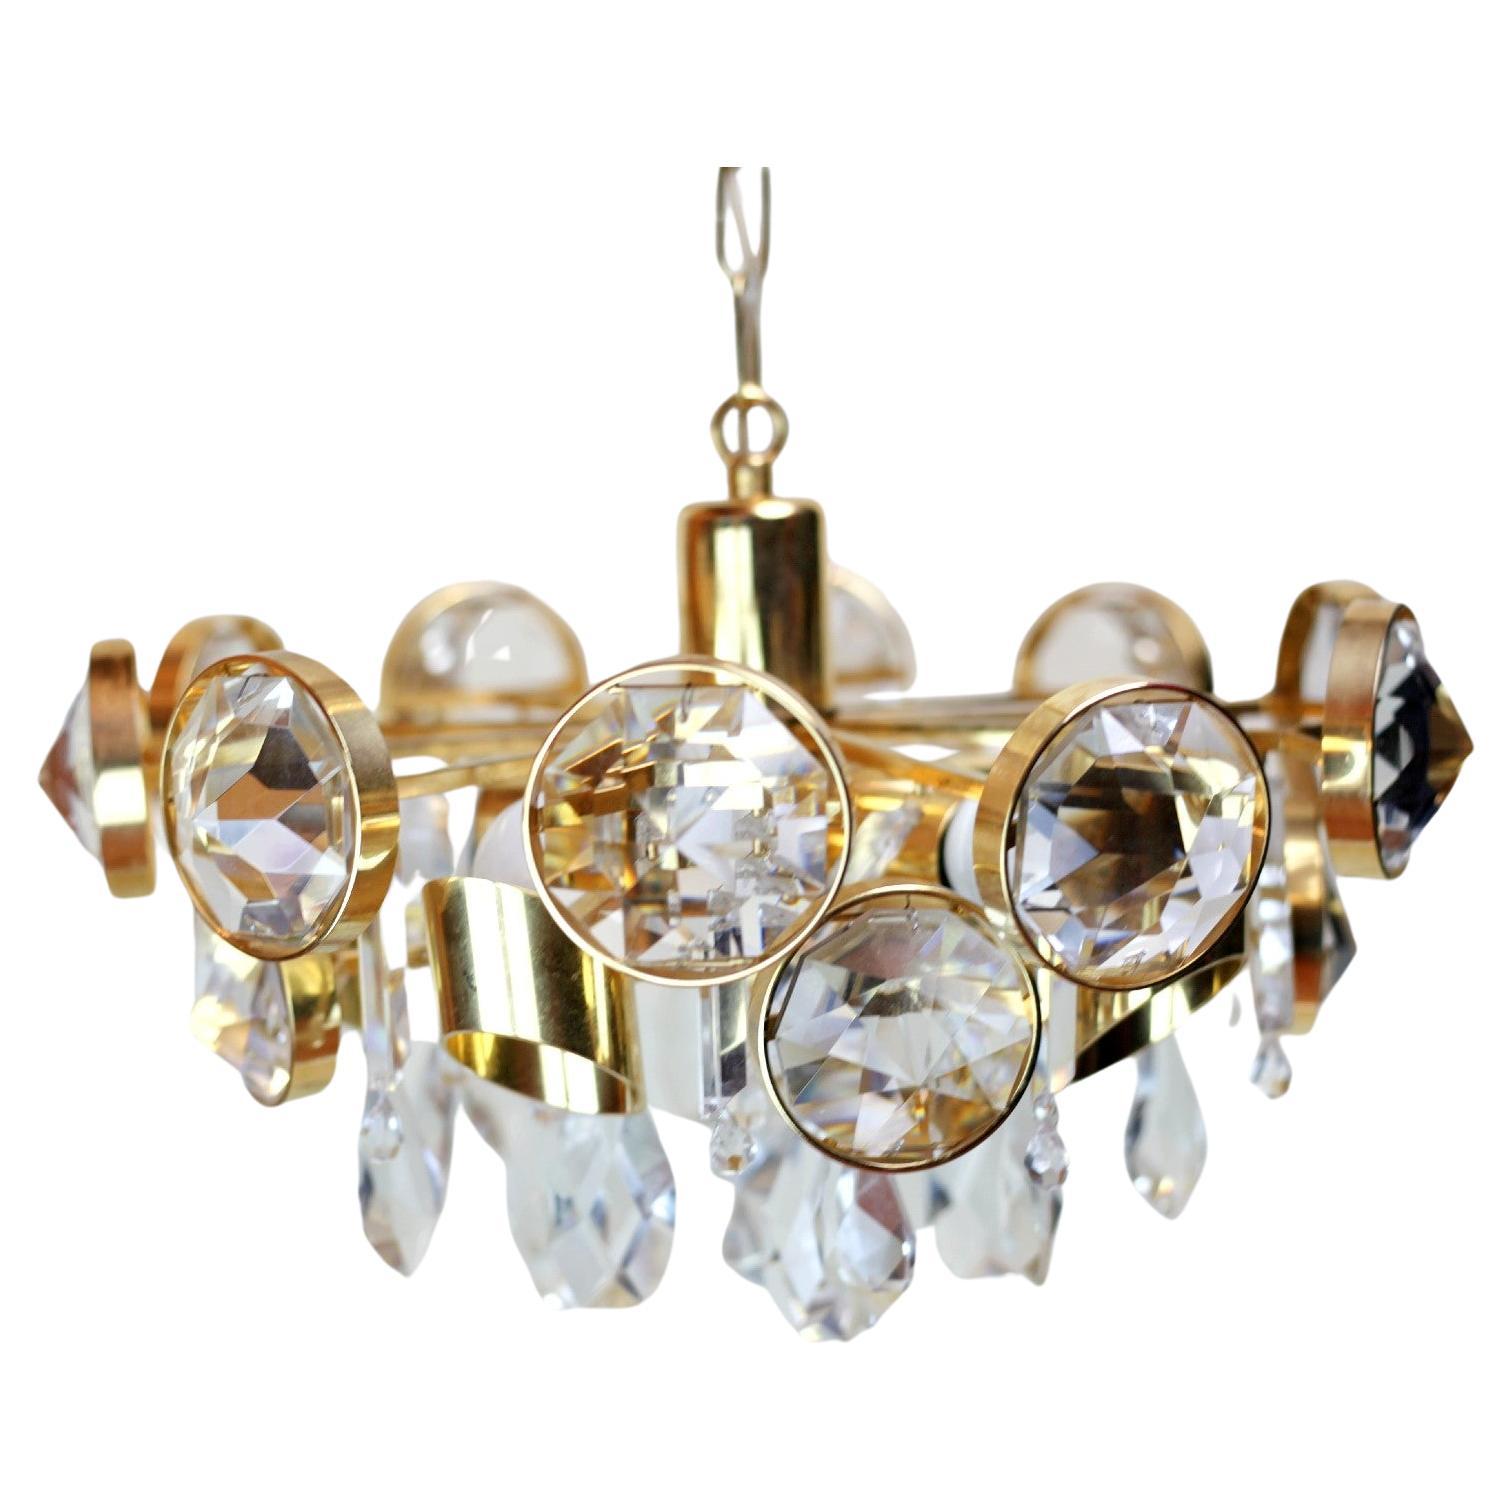 Ernest Palme 24K Gilded Crystal and Brass Chandelier